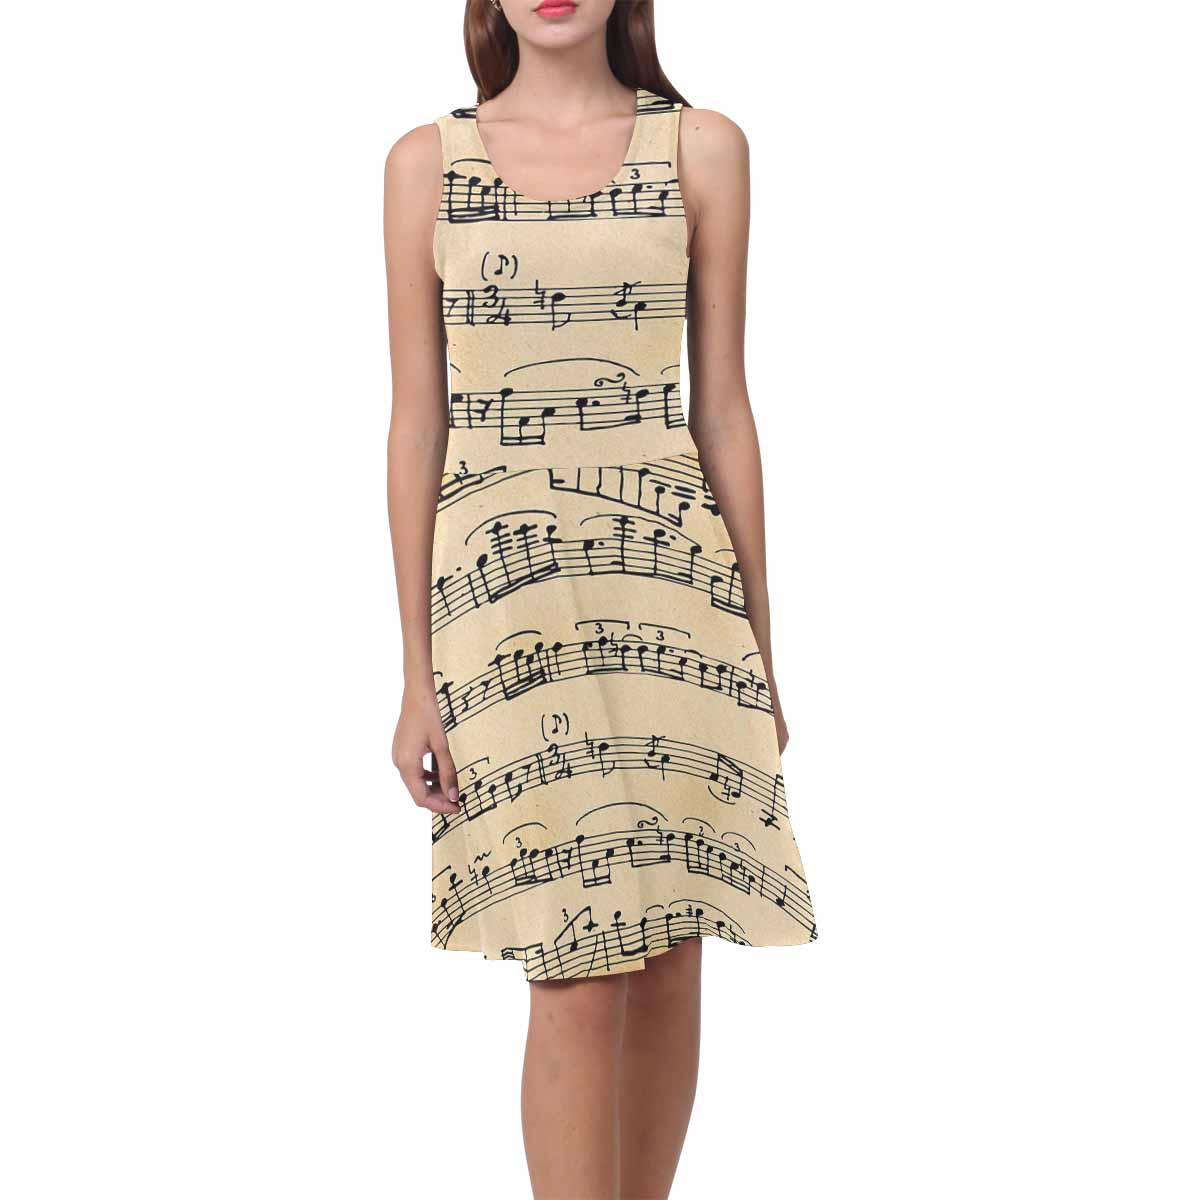 Antique General summer dress, MODEL 09534, design 44